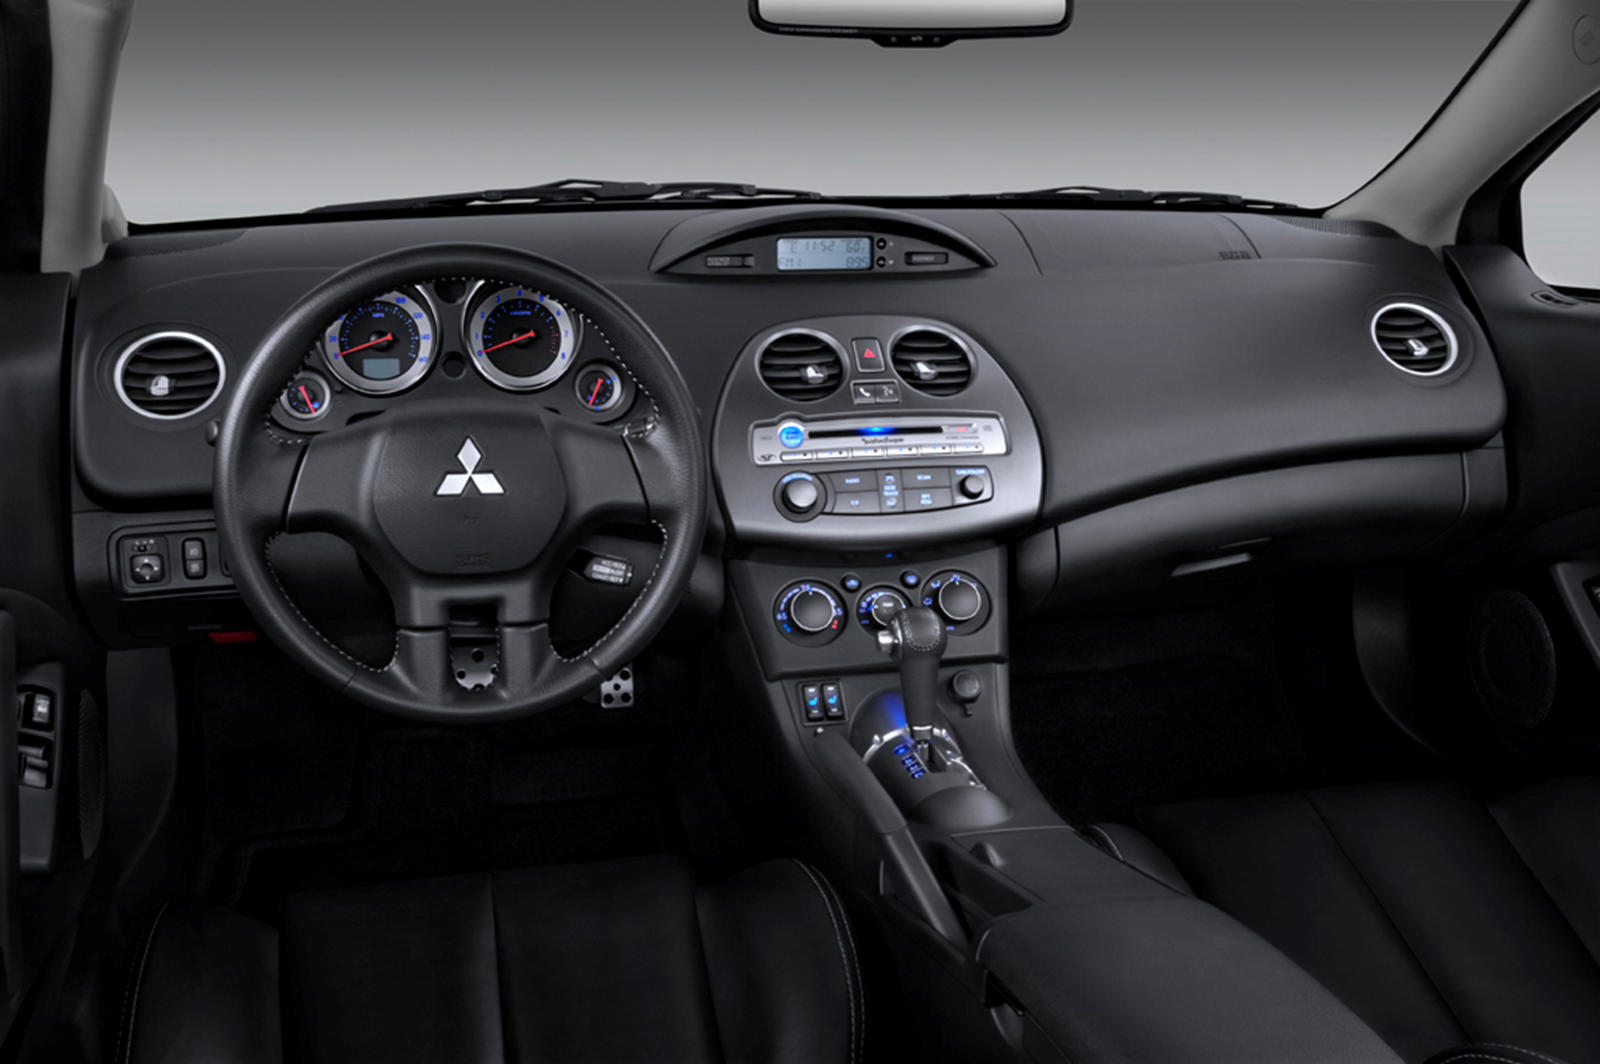 2012 Mitsubishi Eclipse Coupe Dashboard